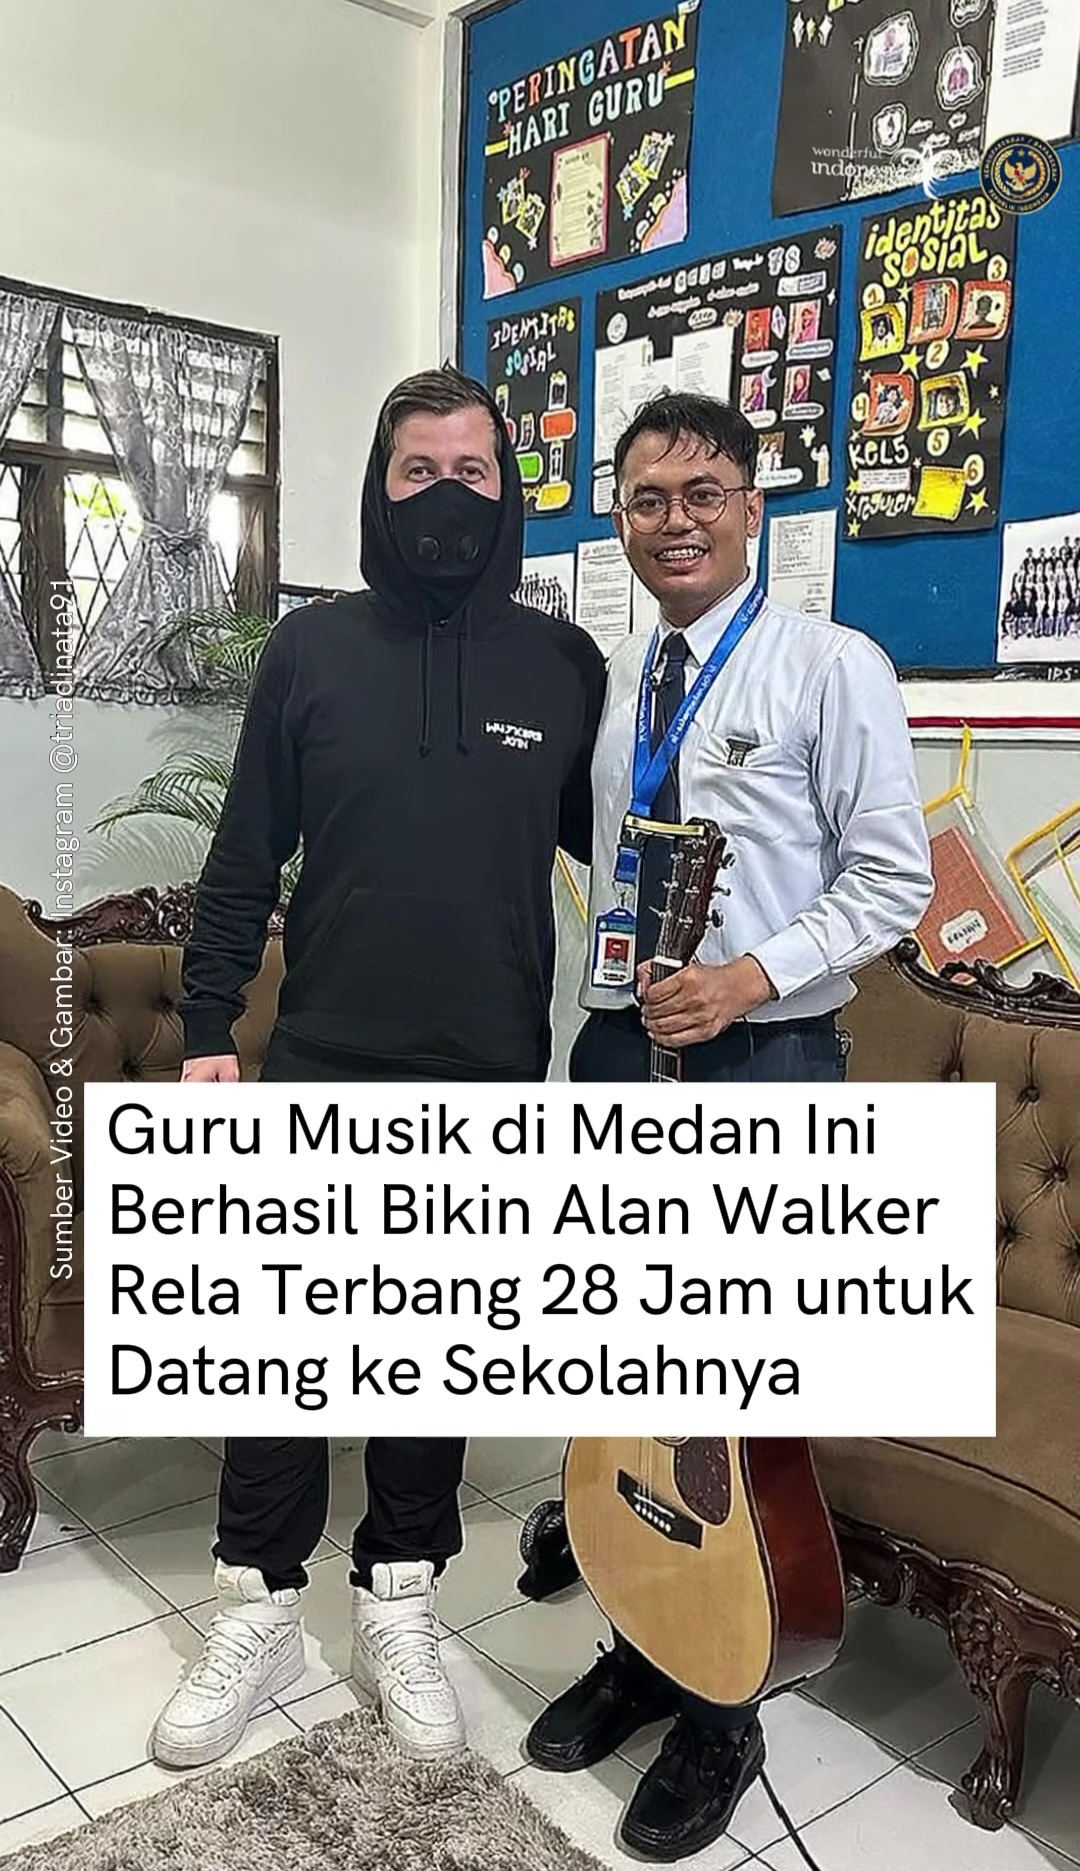 Alan Walker Sambangi SMA Al-Azhar di Medan Sumatera Utara, Ini Misinya